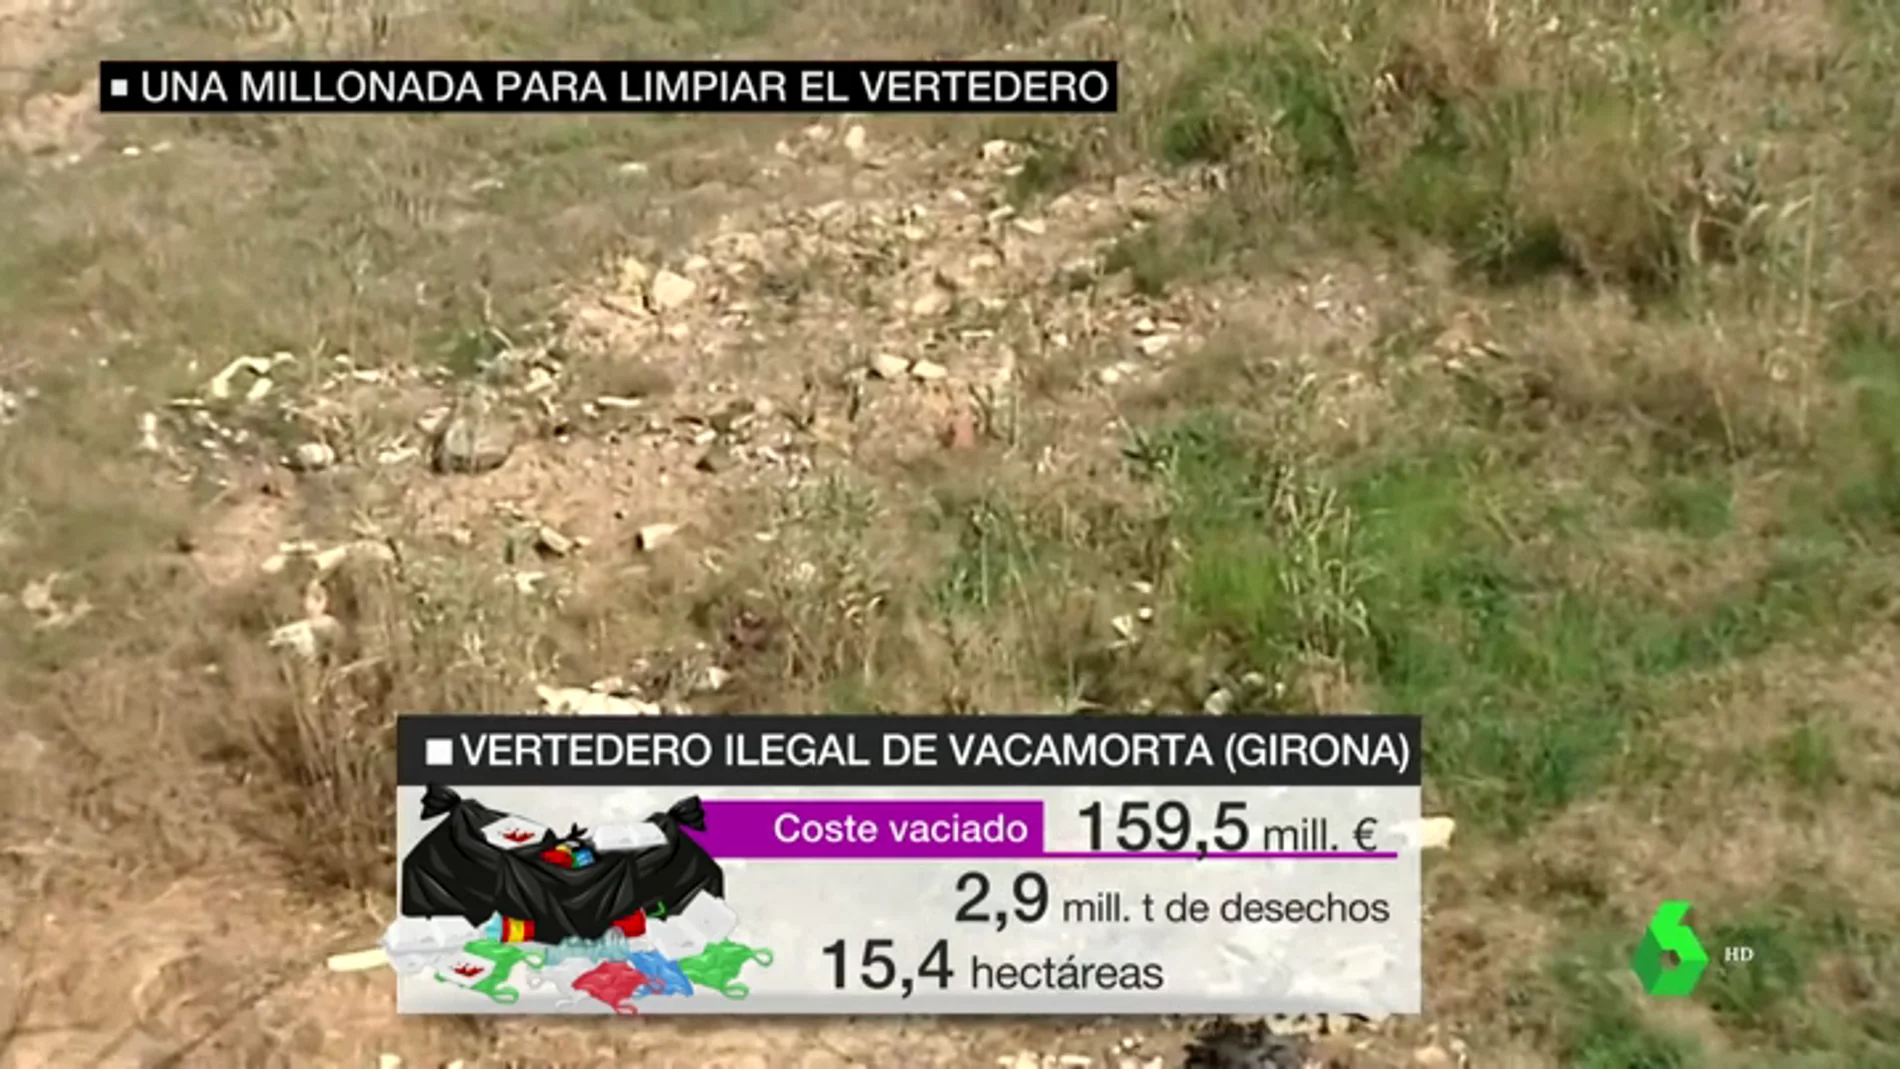 Se necesitarán 160 millones de euros y más de 143.000 viajes de camión para limpiar el vertedero ilegal de Vacamorta, Girona